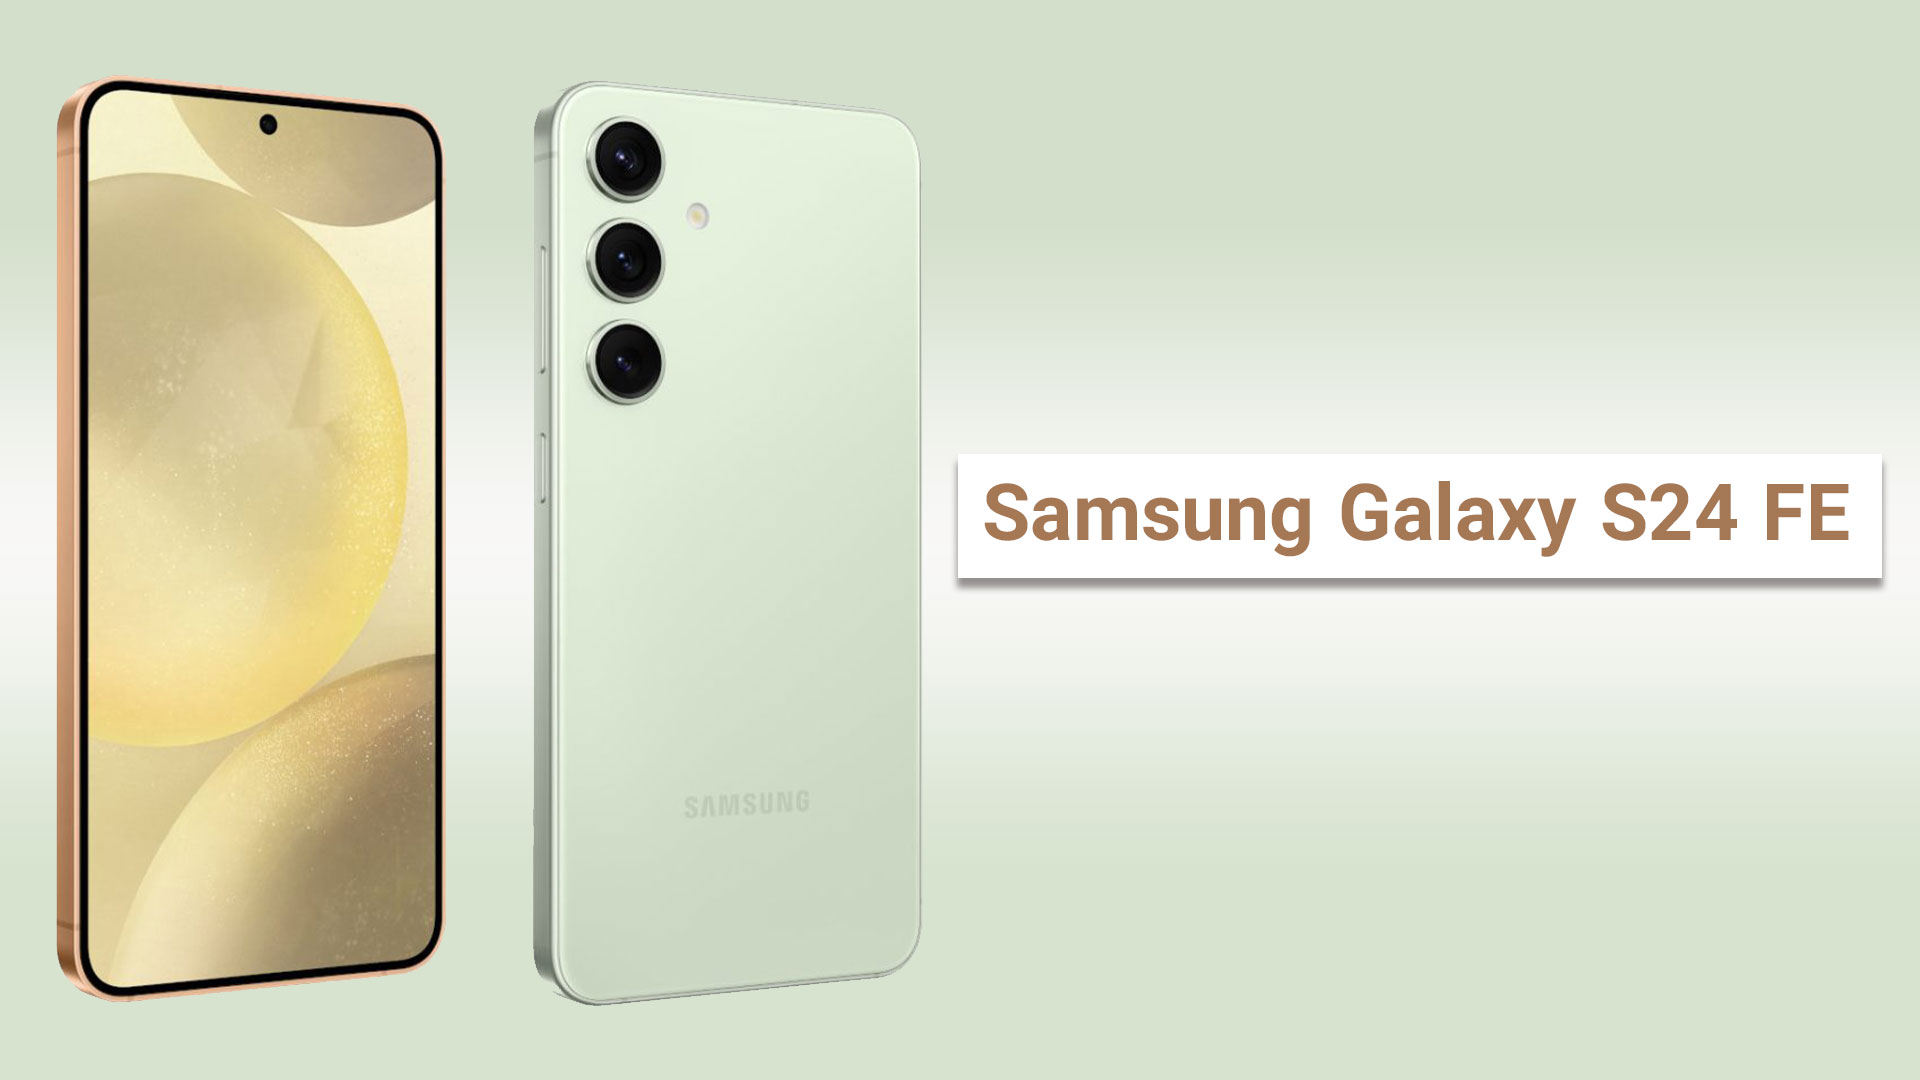 Samsung Galaxy S24 FE